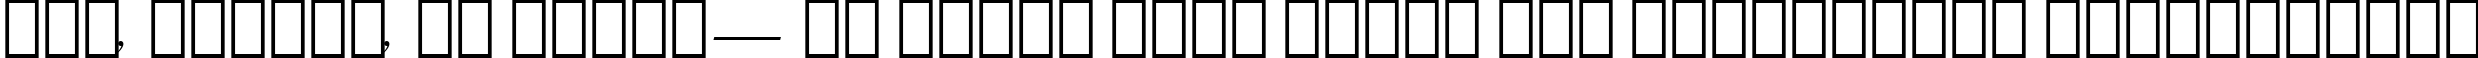 Пример написания шрифтом Ribbon 131 Bold BT текста на украинском